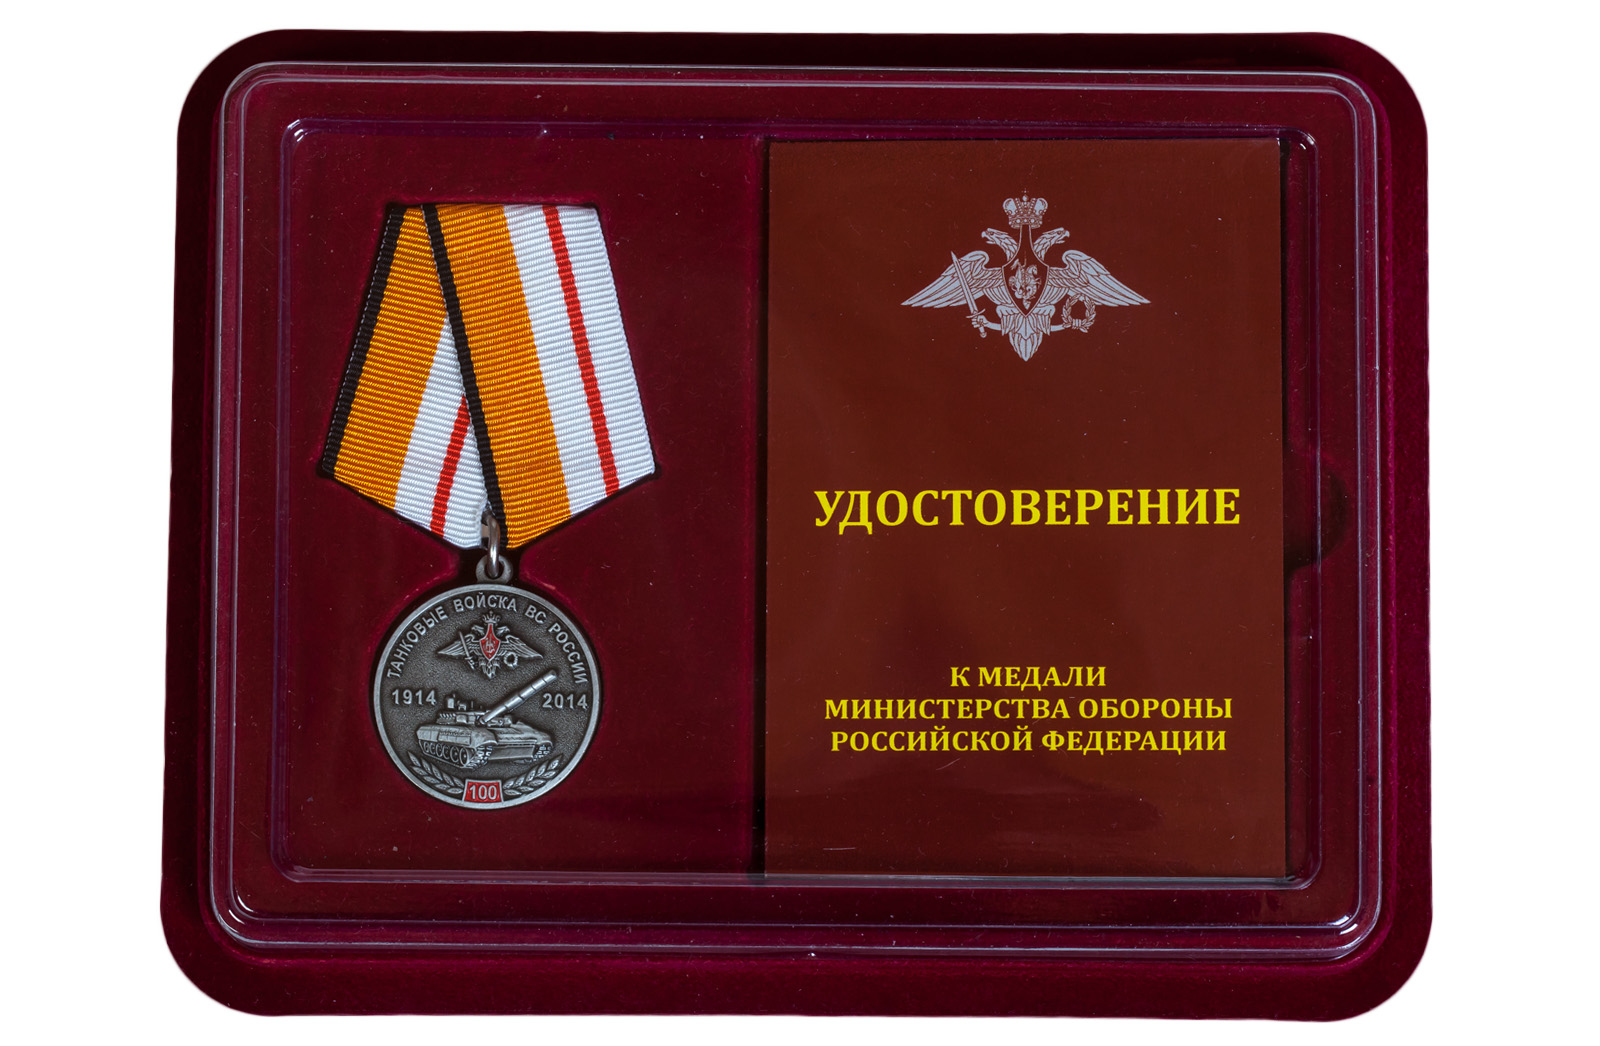 Памятная медаль "100 лет Танковым войскам" МО РФ 